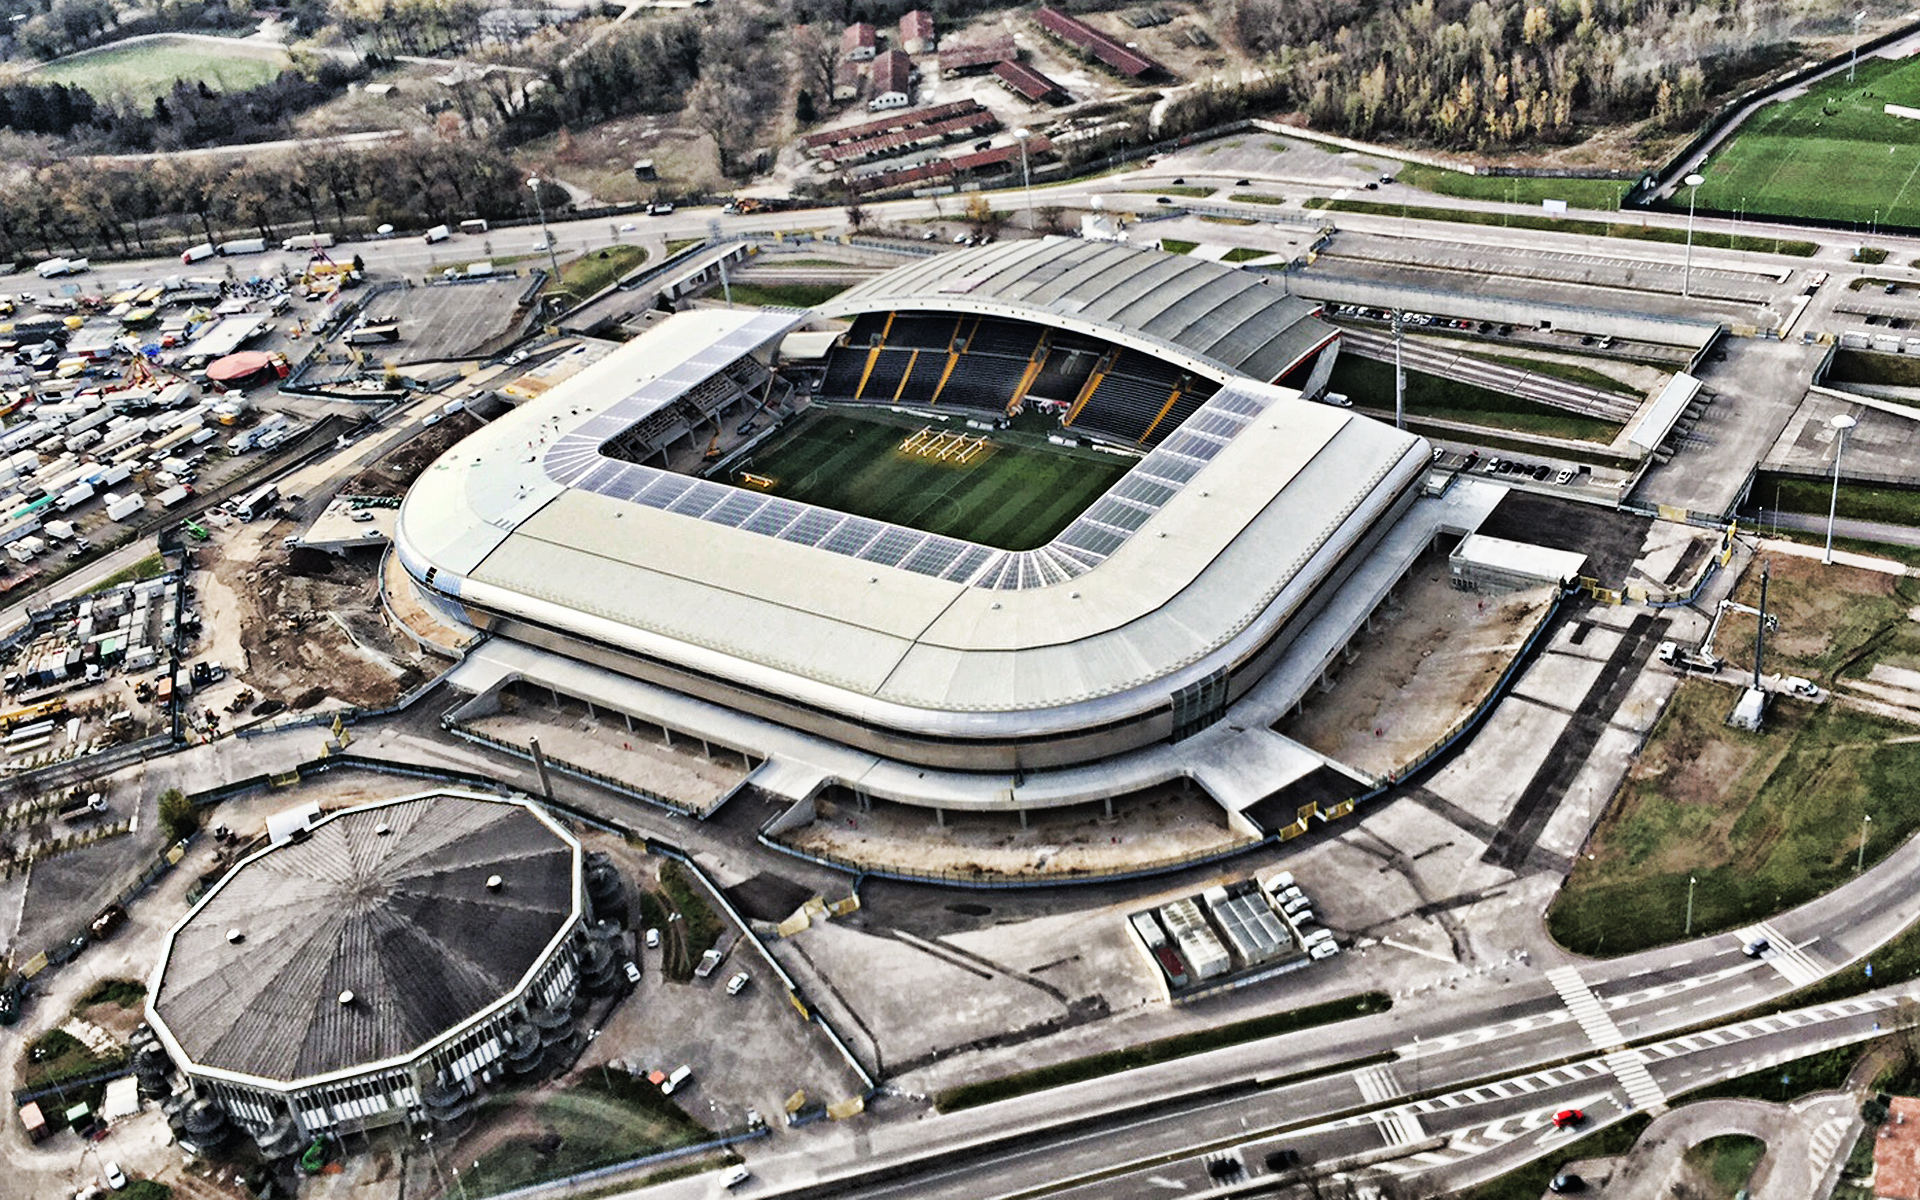 Dacia Arena, the stadium in Udine